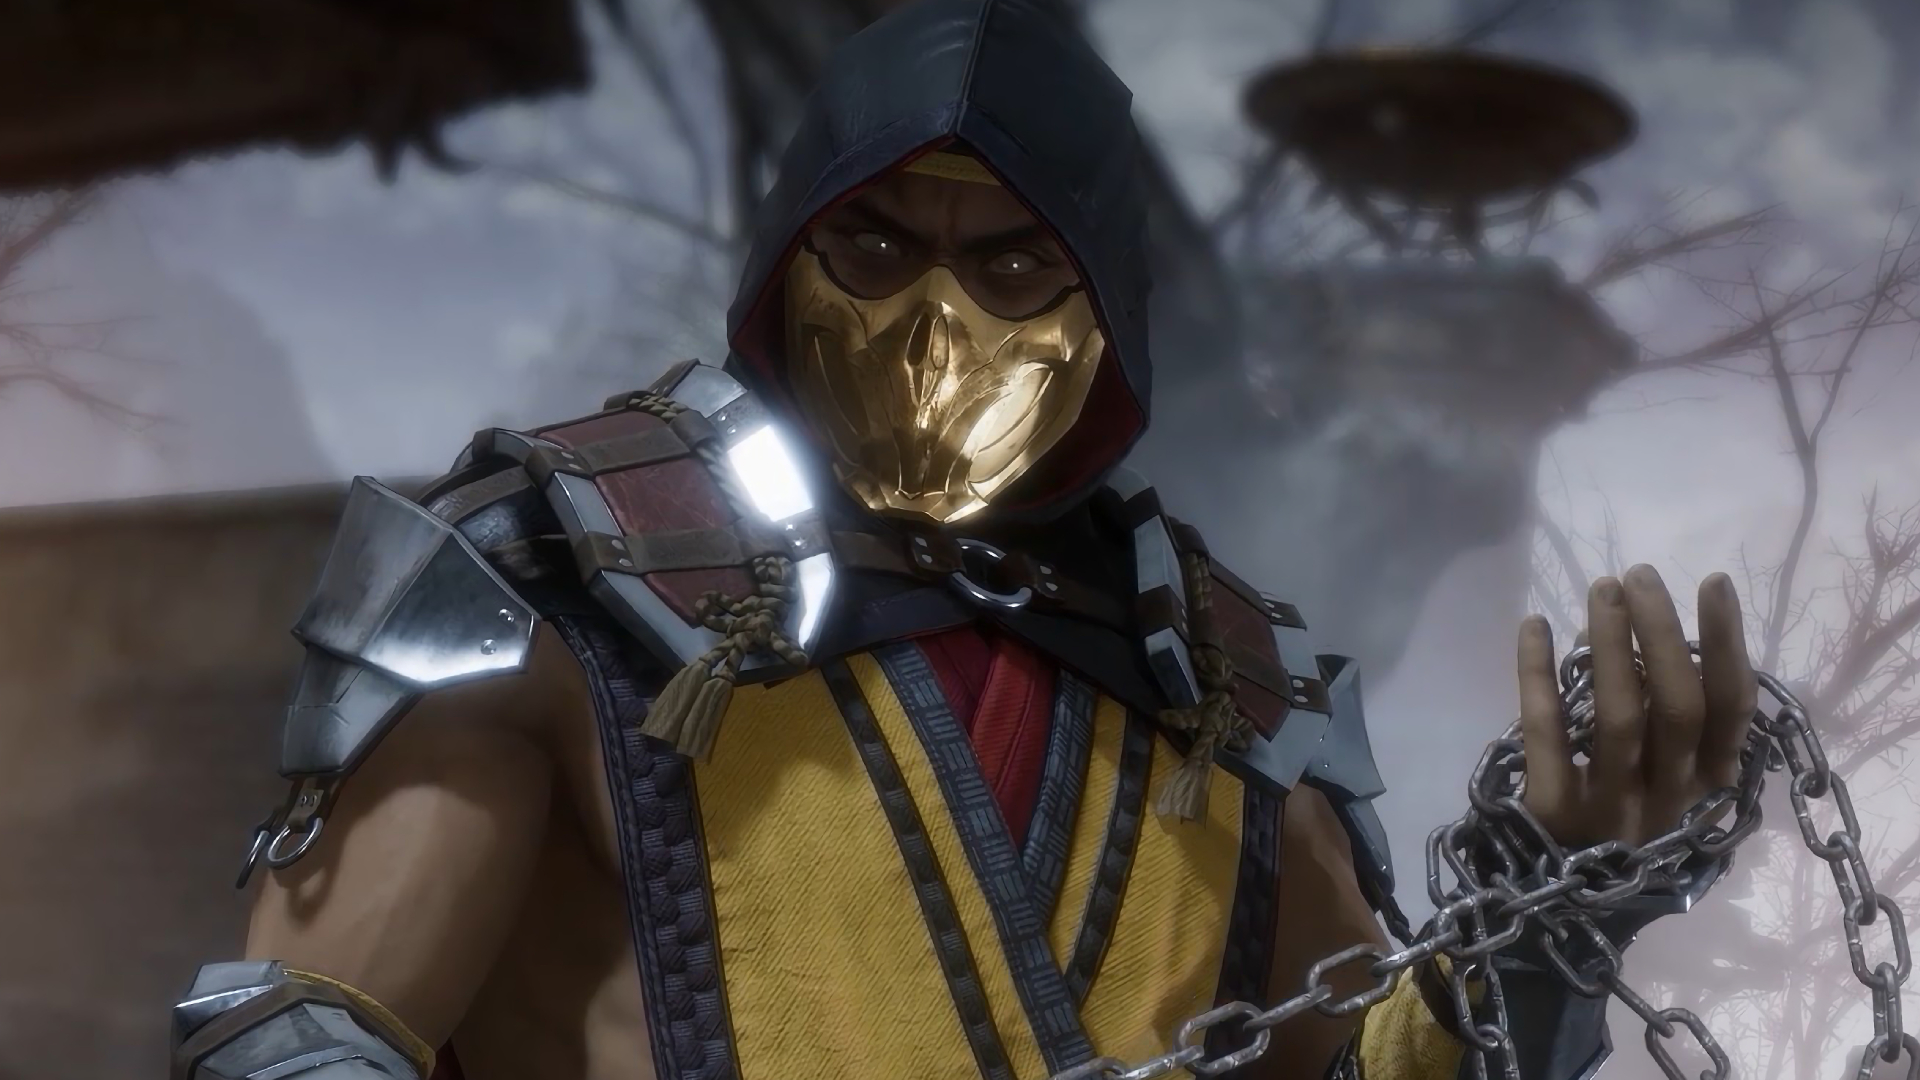 Mortal Kombat: confira a evolução do popular game de luta